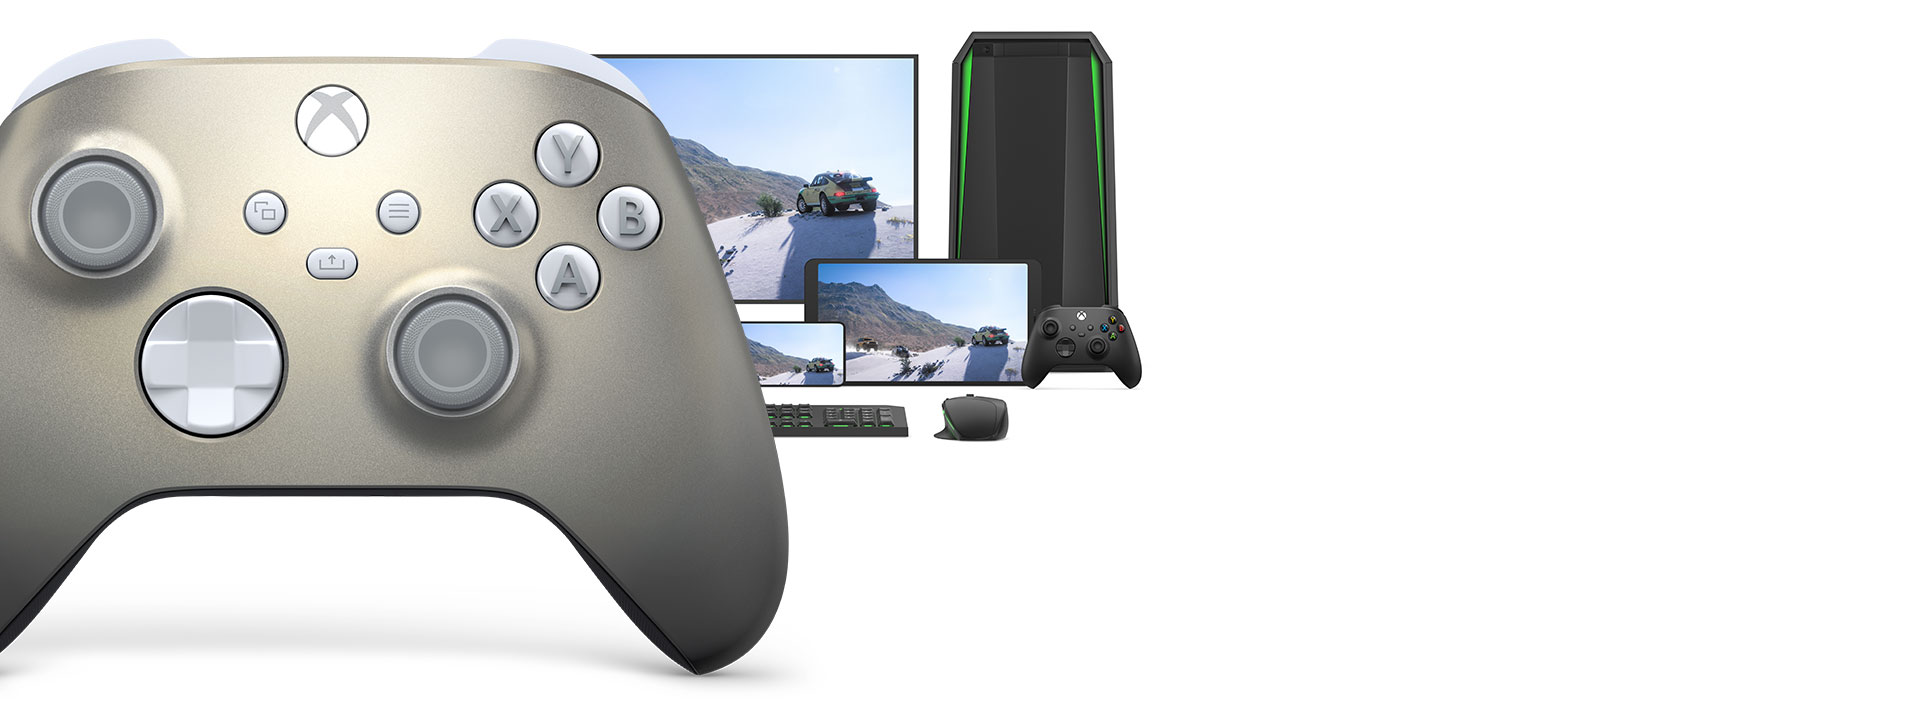 Kontroler bezprzewodowy Xbox w wersji specjalnej Lunar Shift razem z komputerem, telewizorem i konsolą Xbox Series S